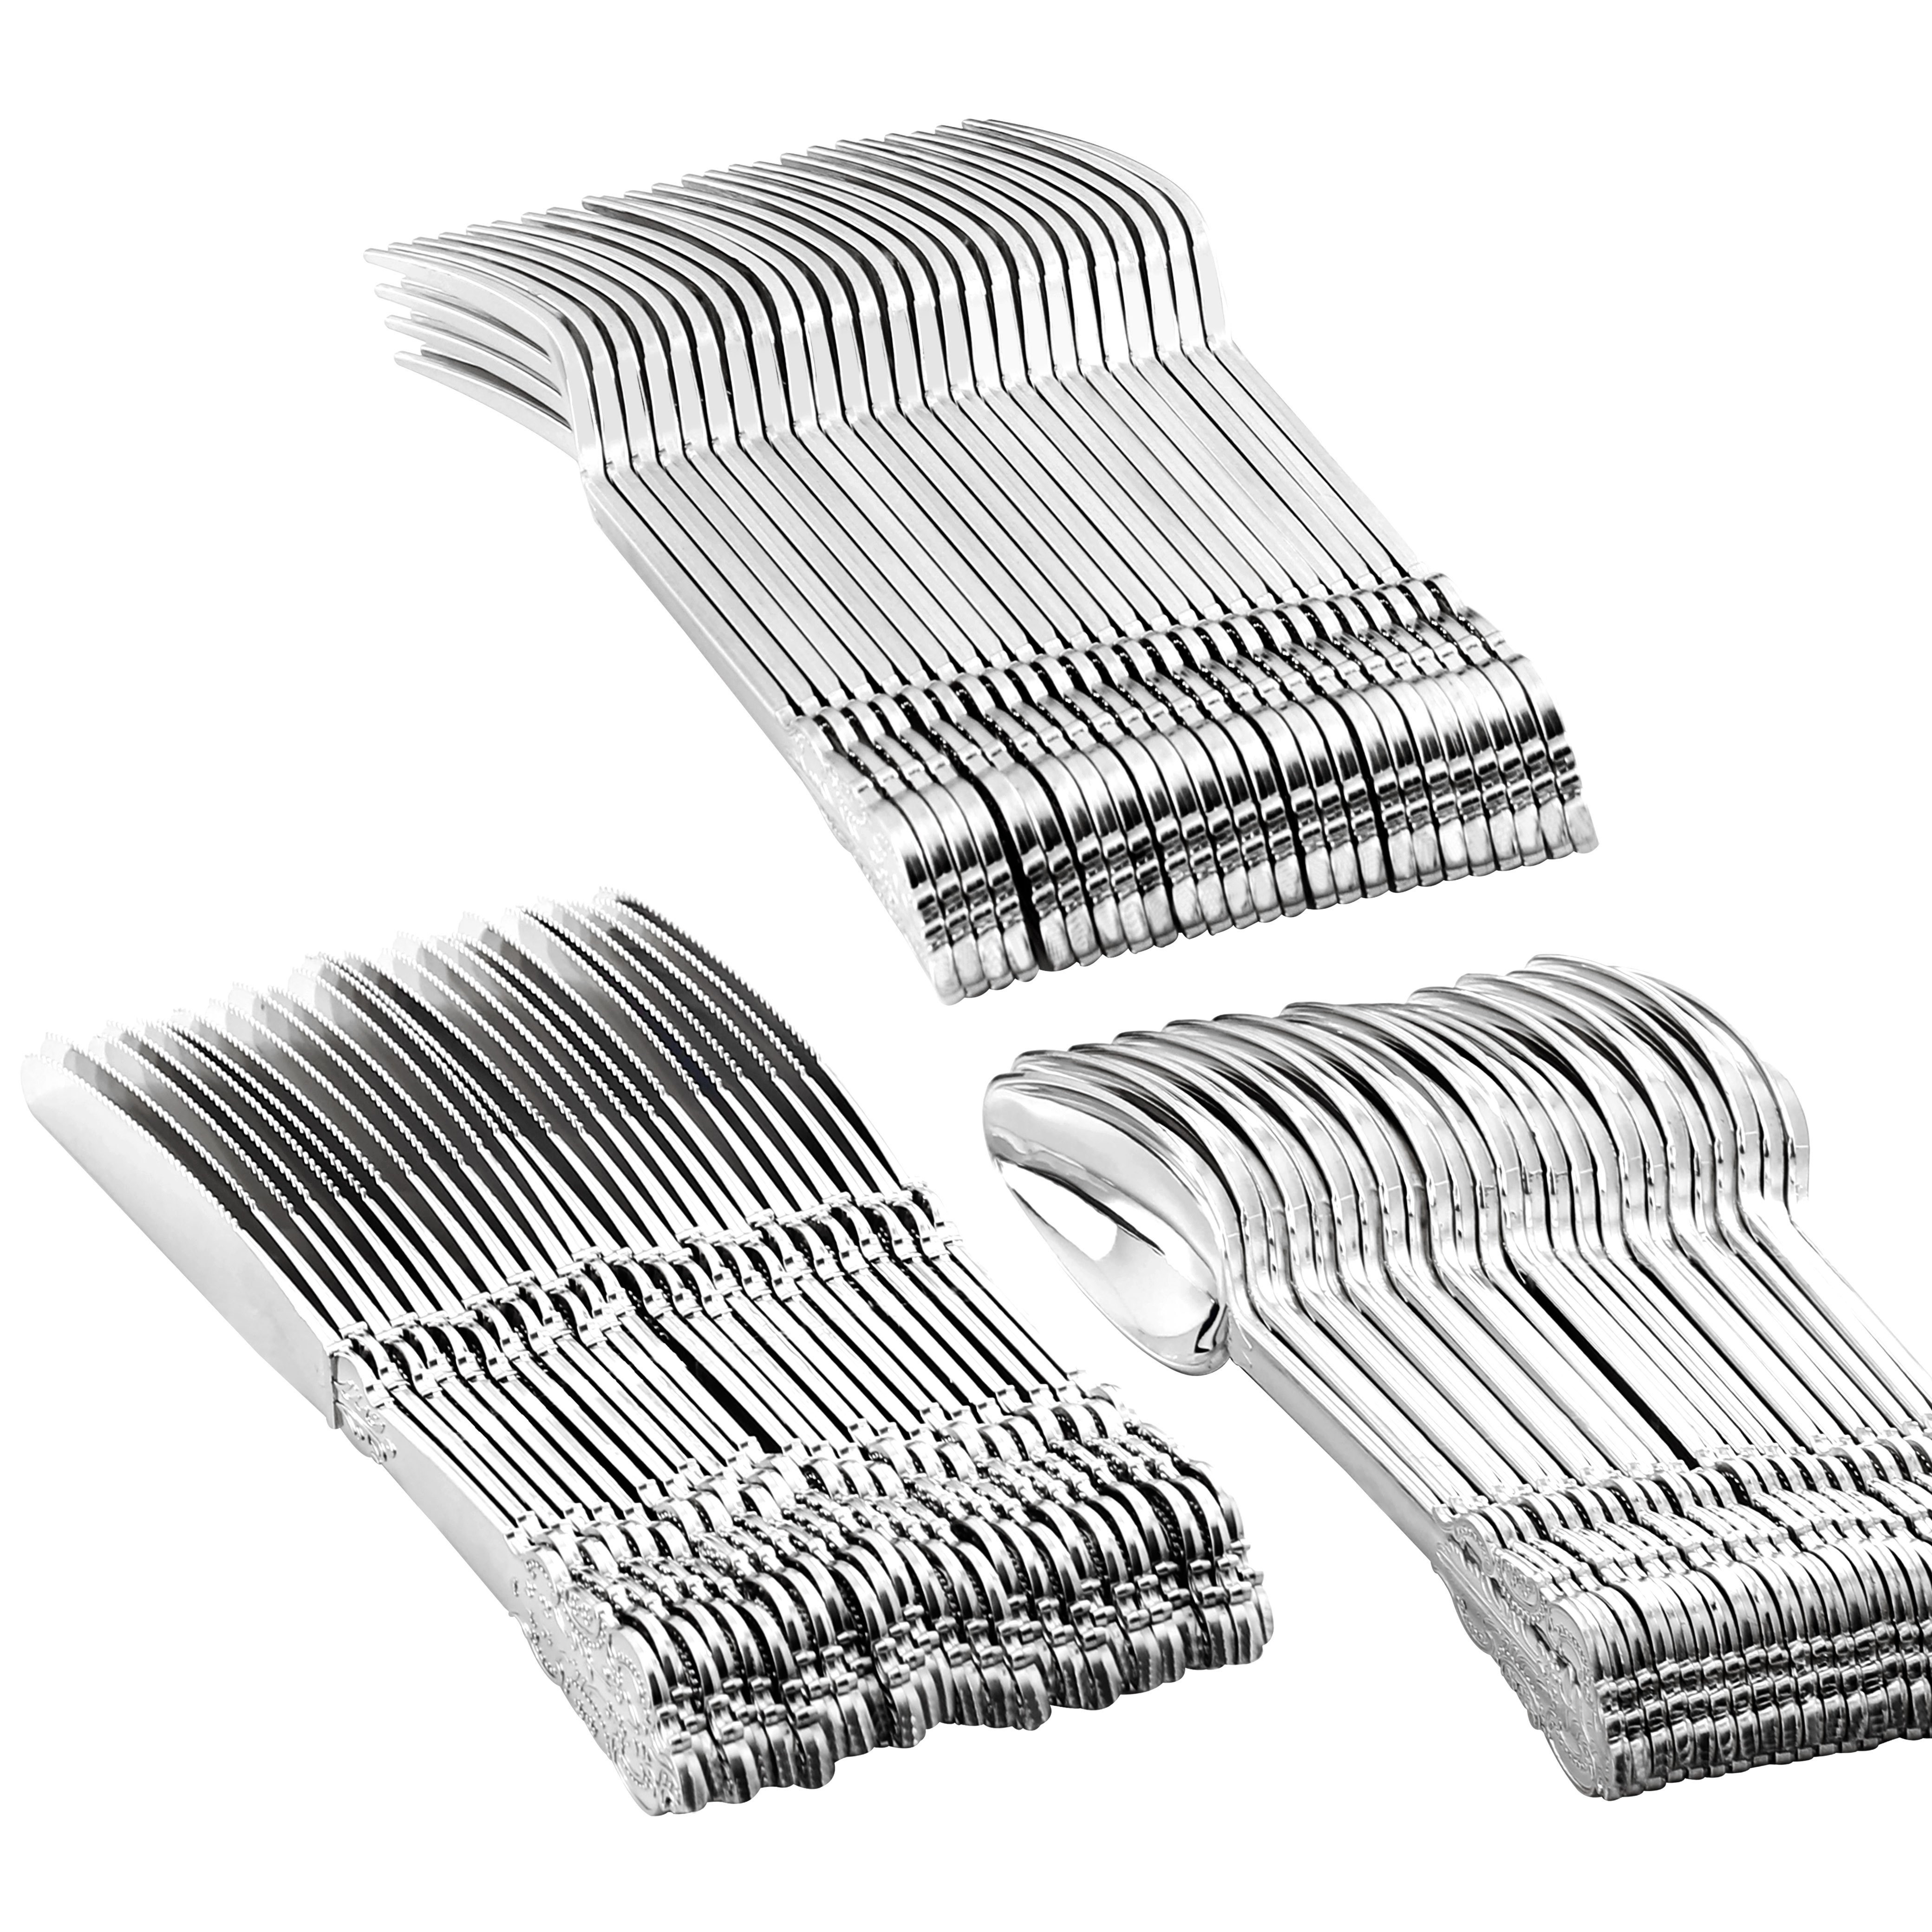  Tenedores desechables de plata - 24 tenedores de